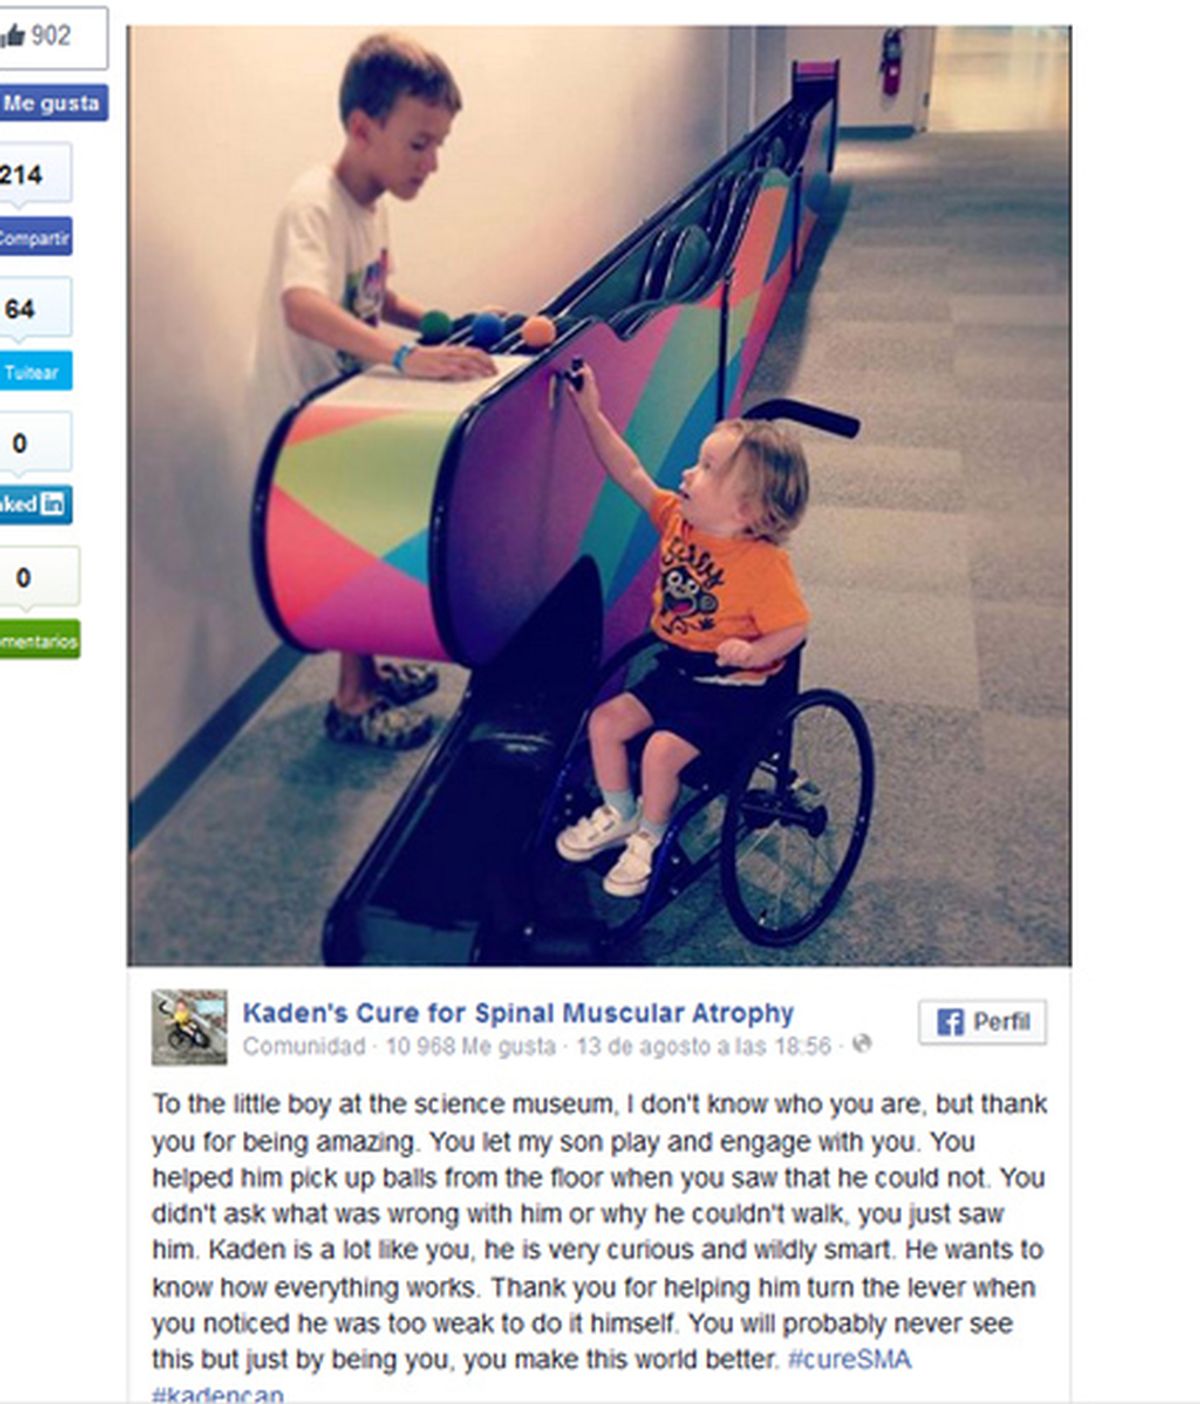 La foto de un niño que atiende a otro con discapacidad sin diferencia alguna se convierte en viral